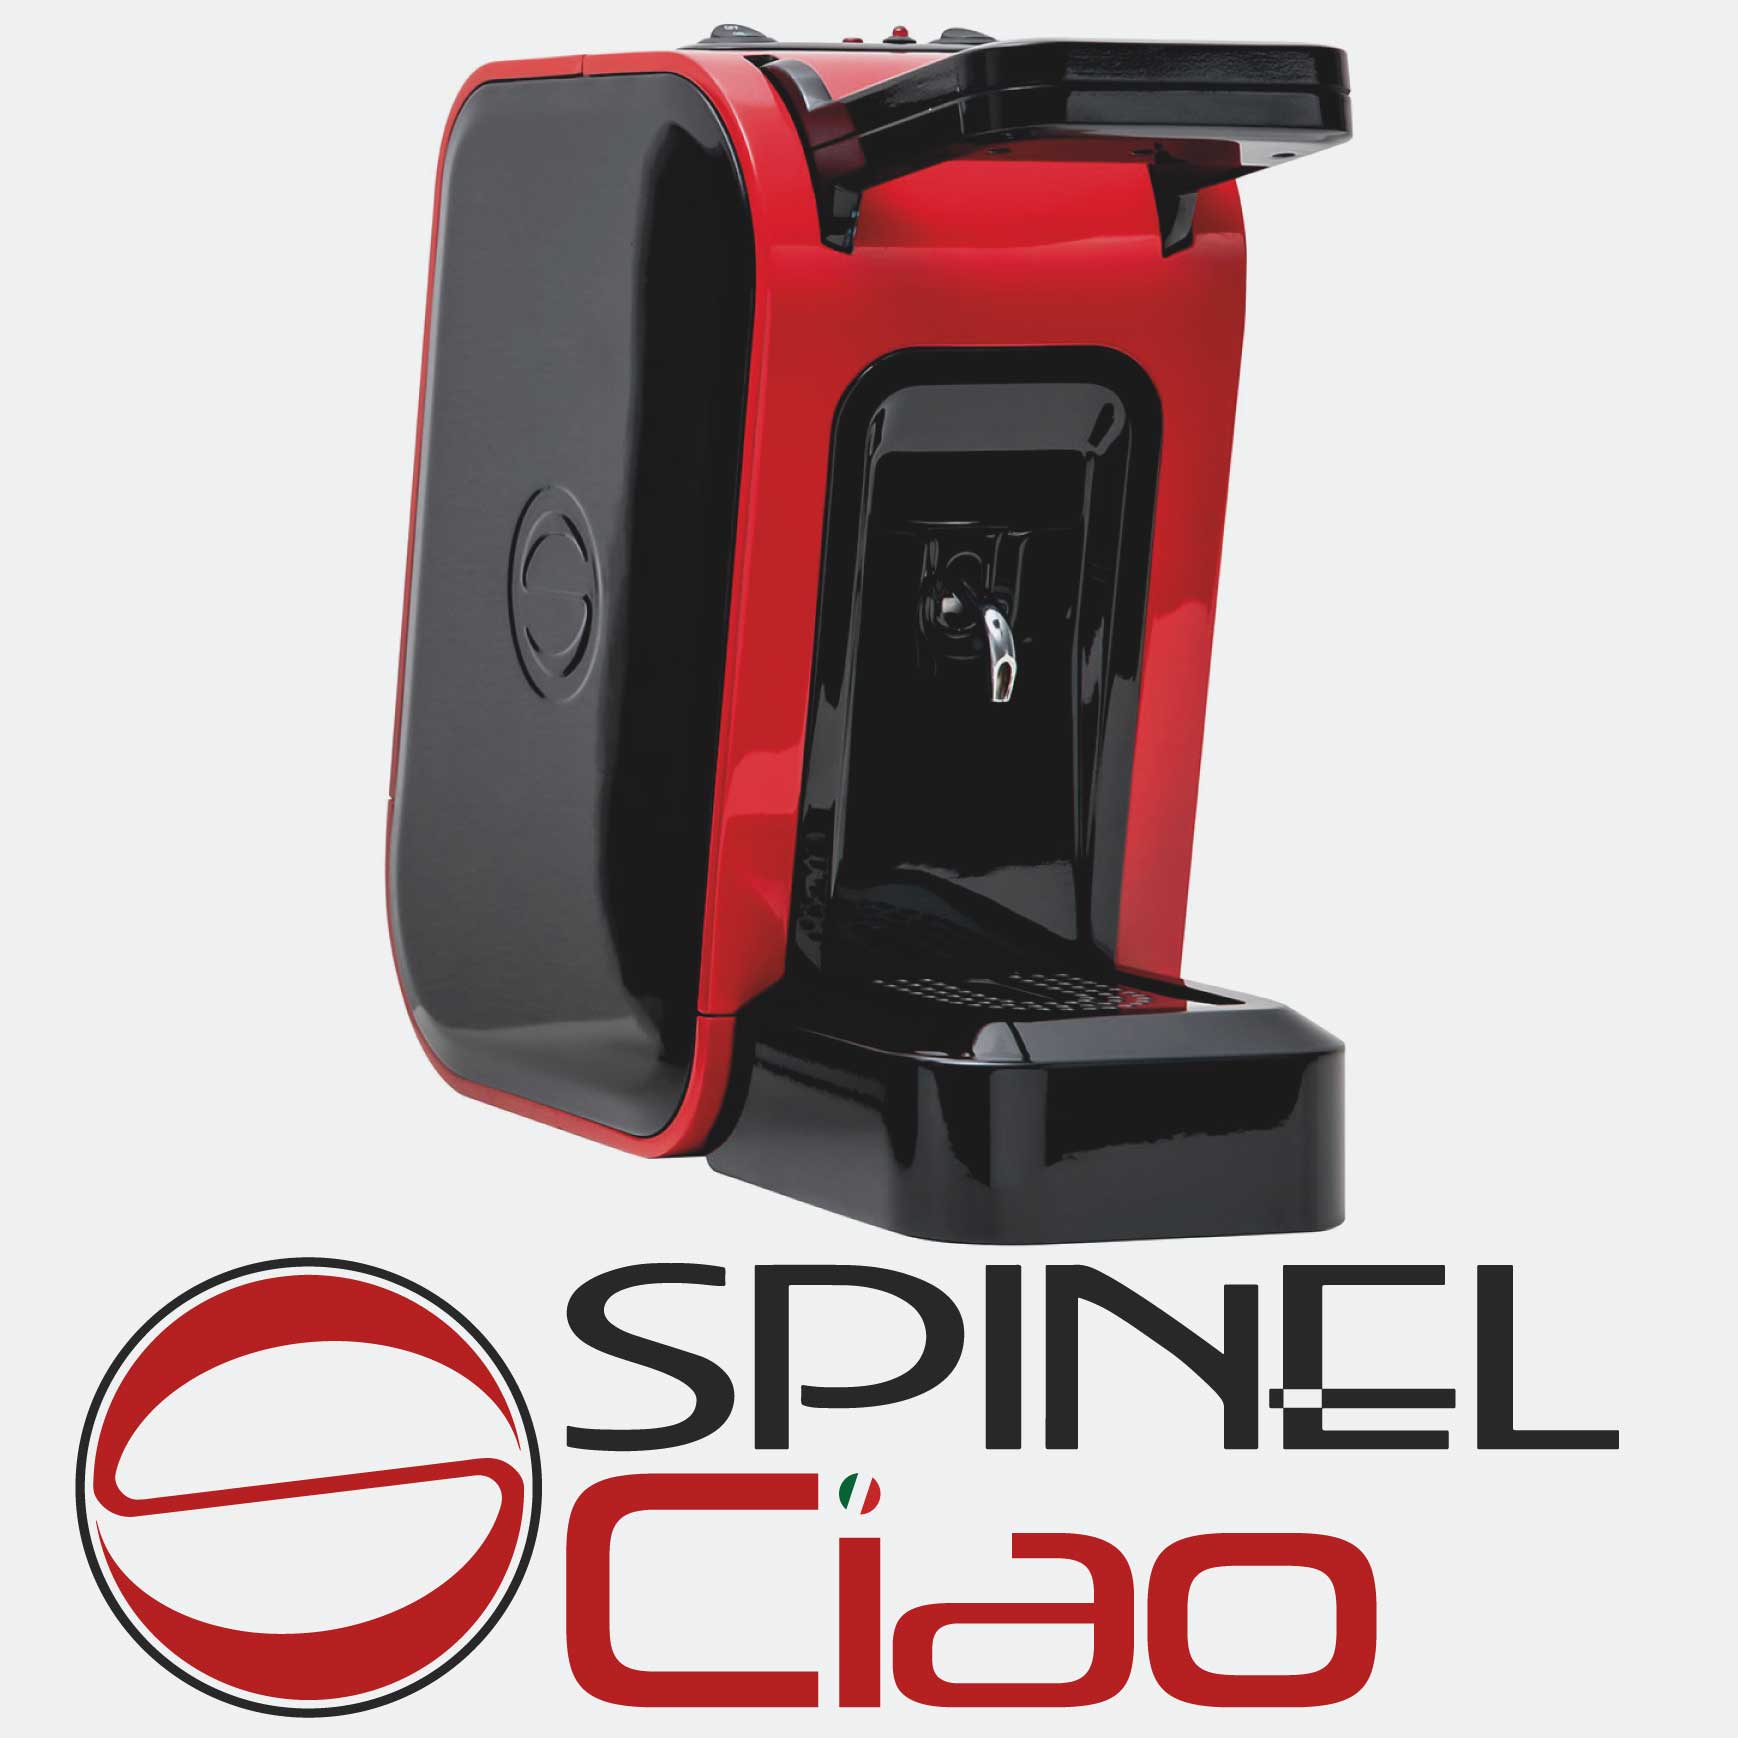 Spinel Macchine per Espresso - Semiprofessionali, Made in Italy - Cialdoro